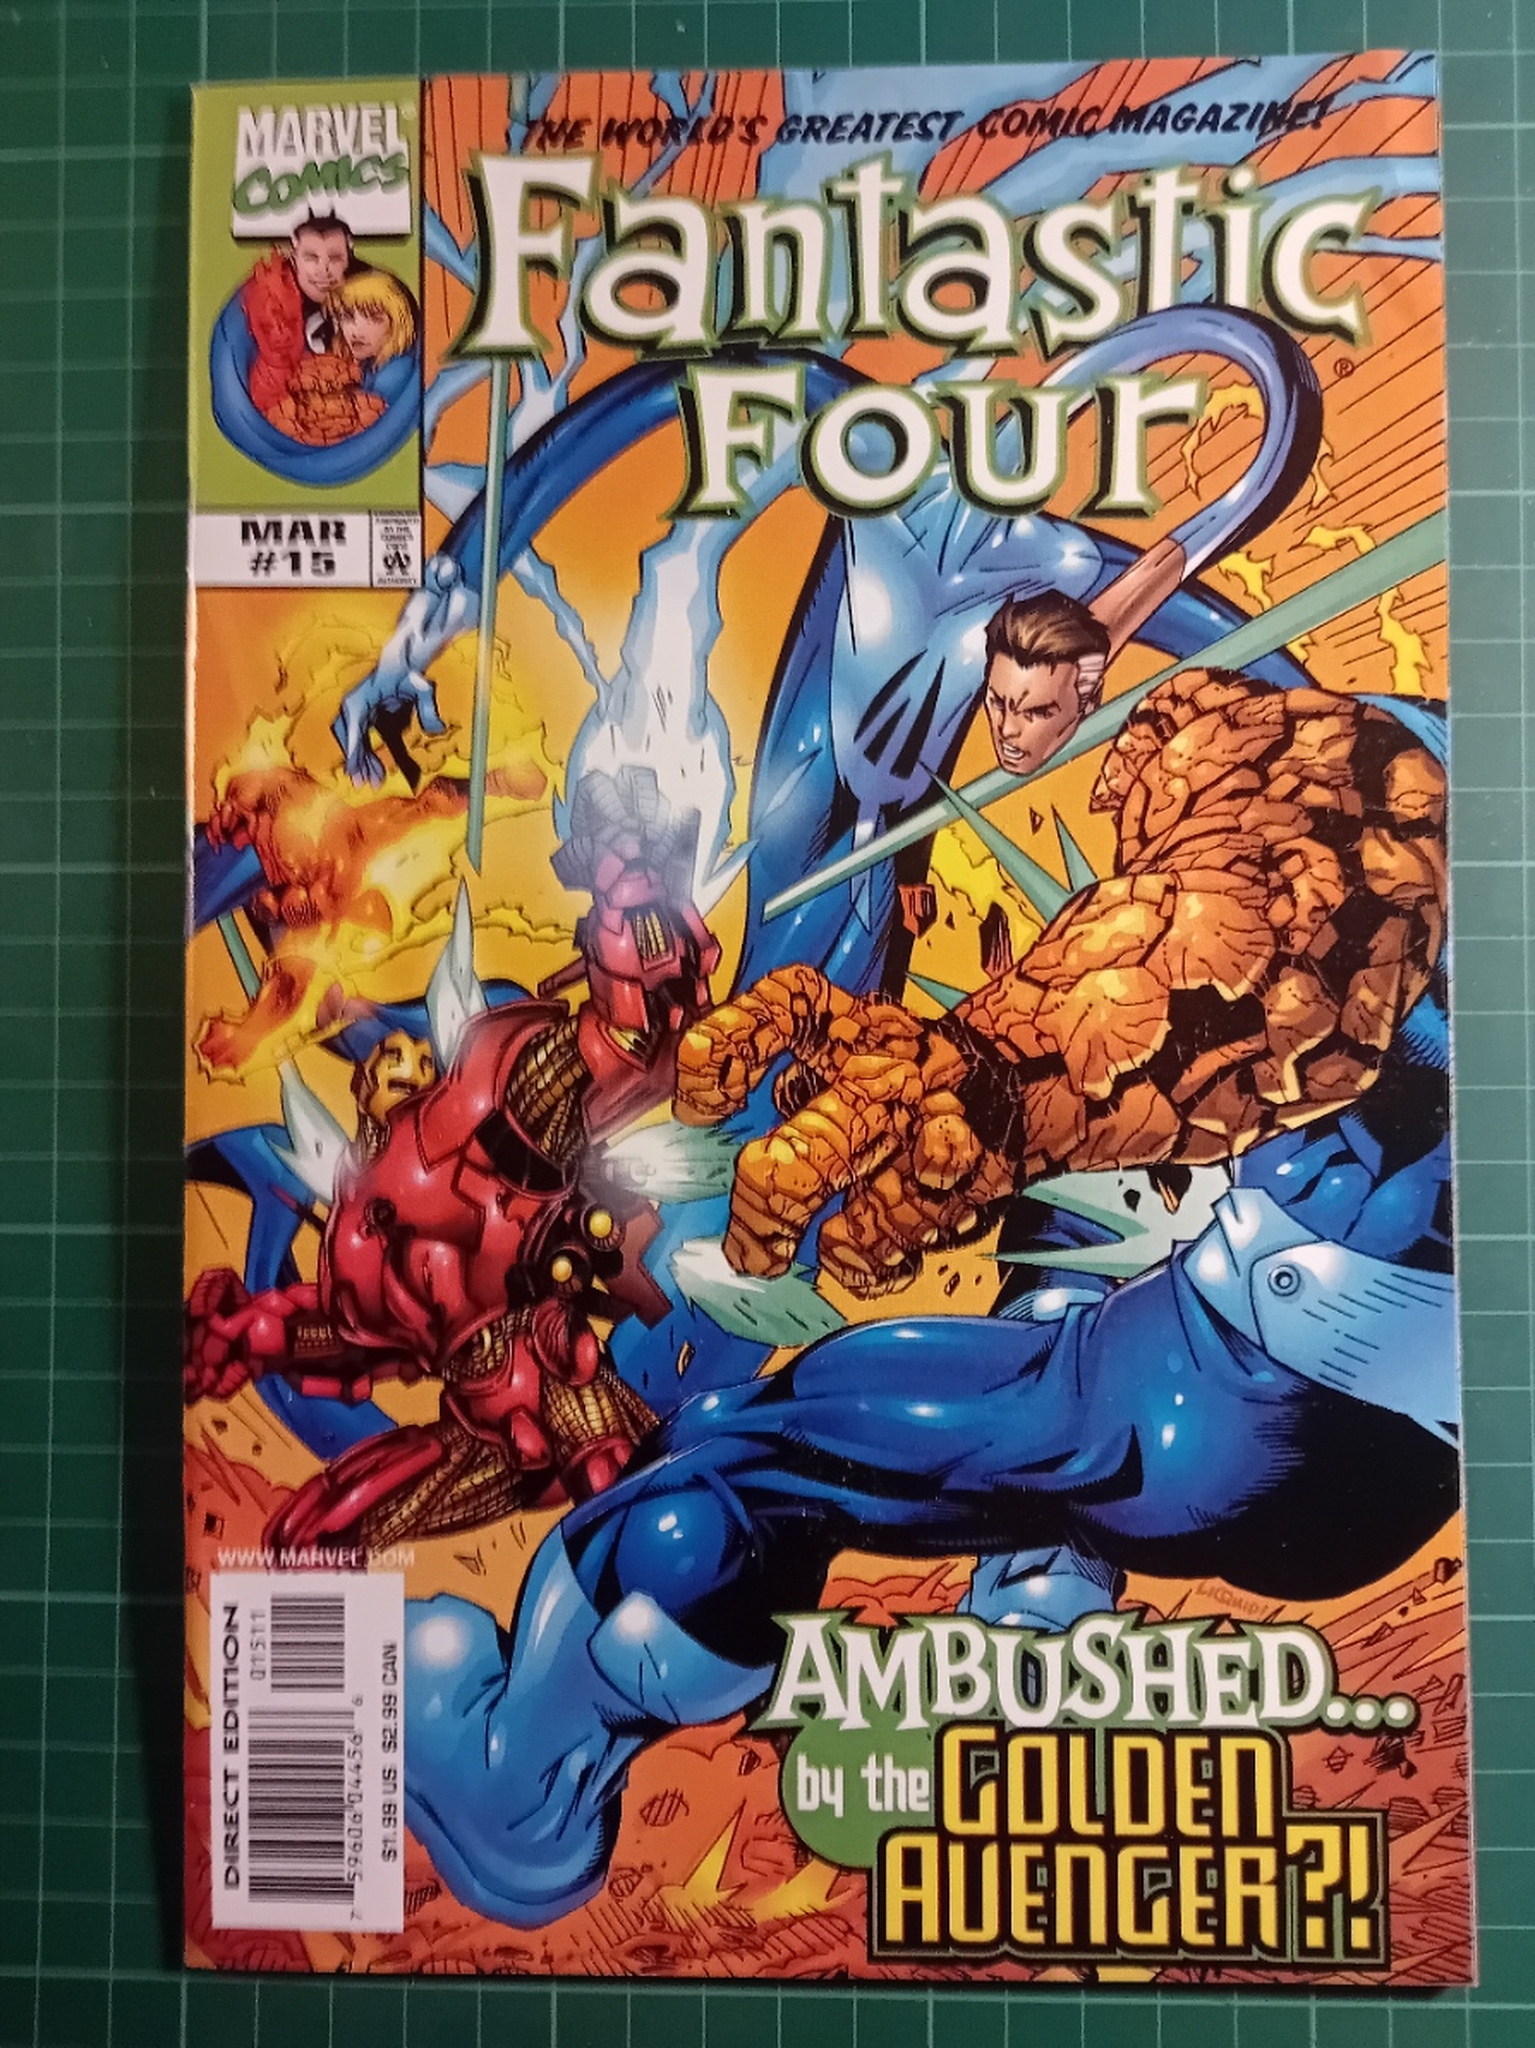 Fantastic four vol 3 #15